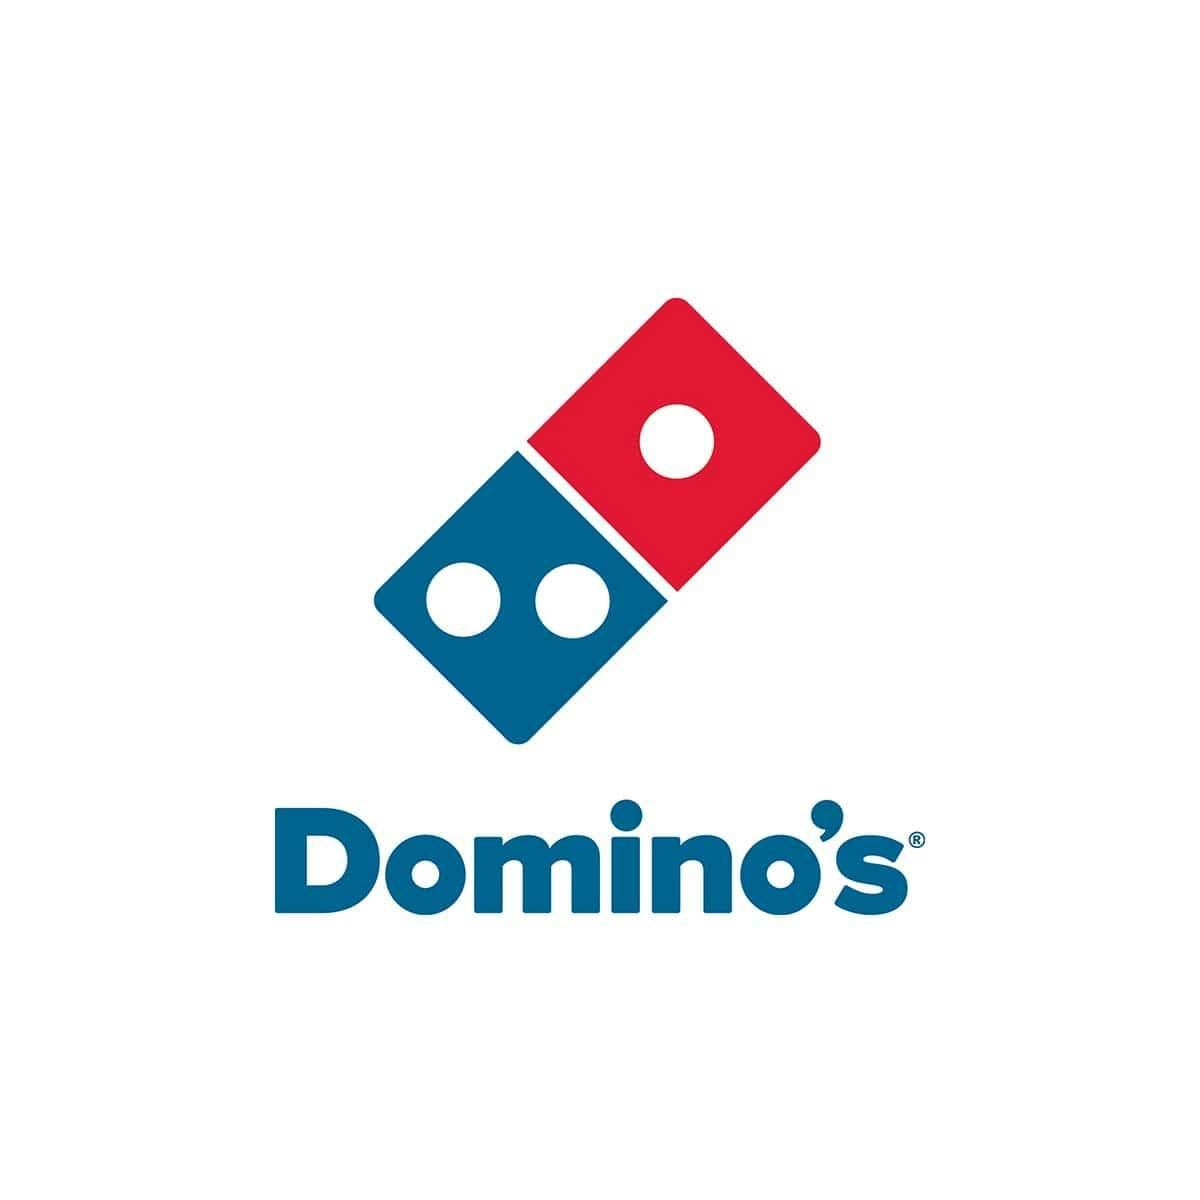  logo de la marque domino's pizza